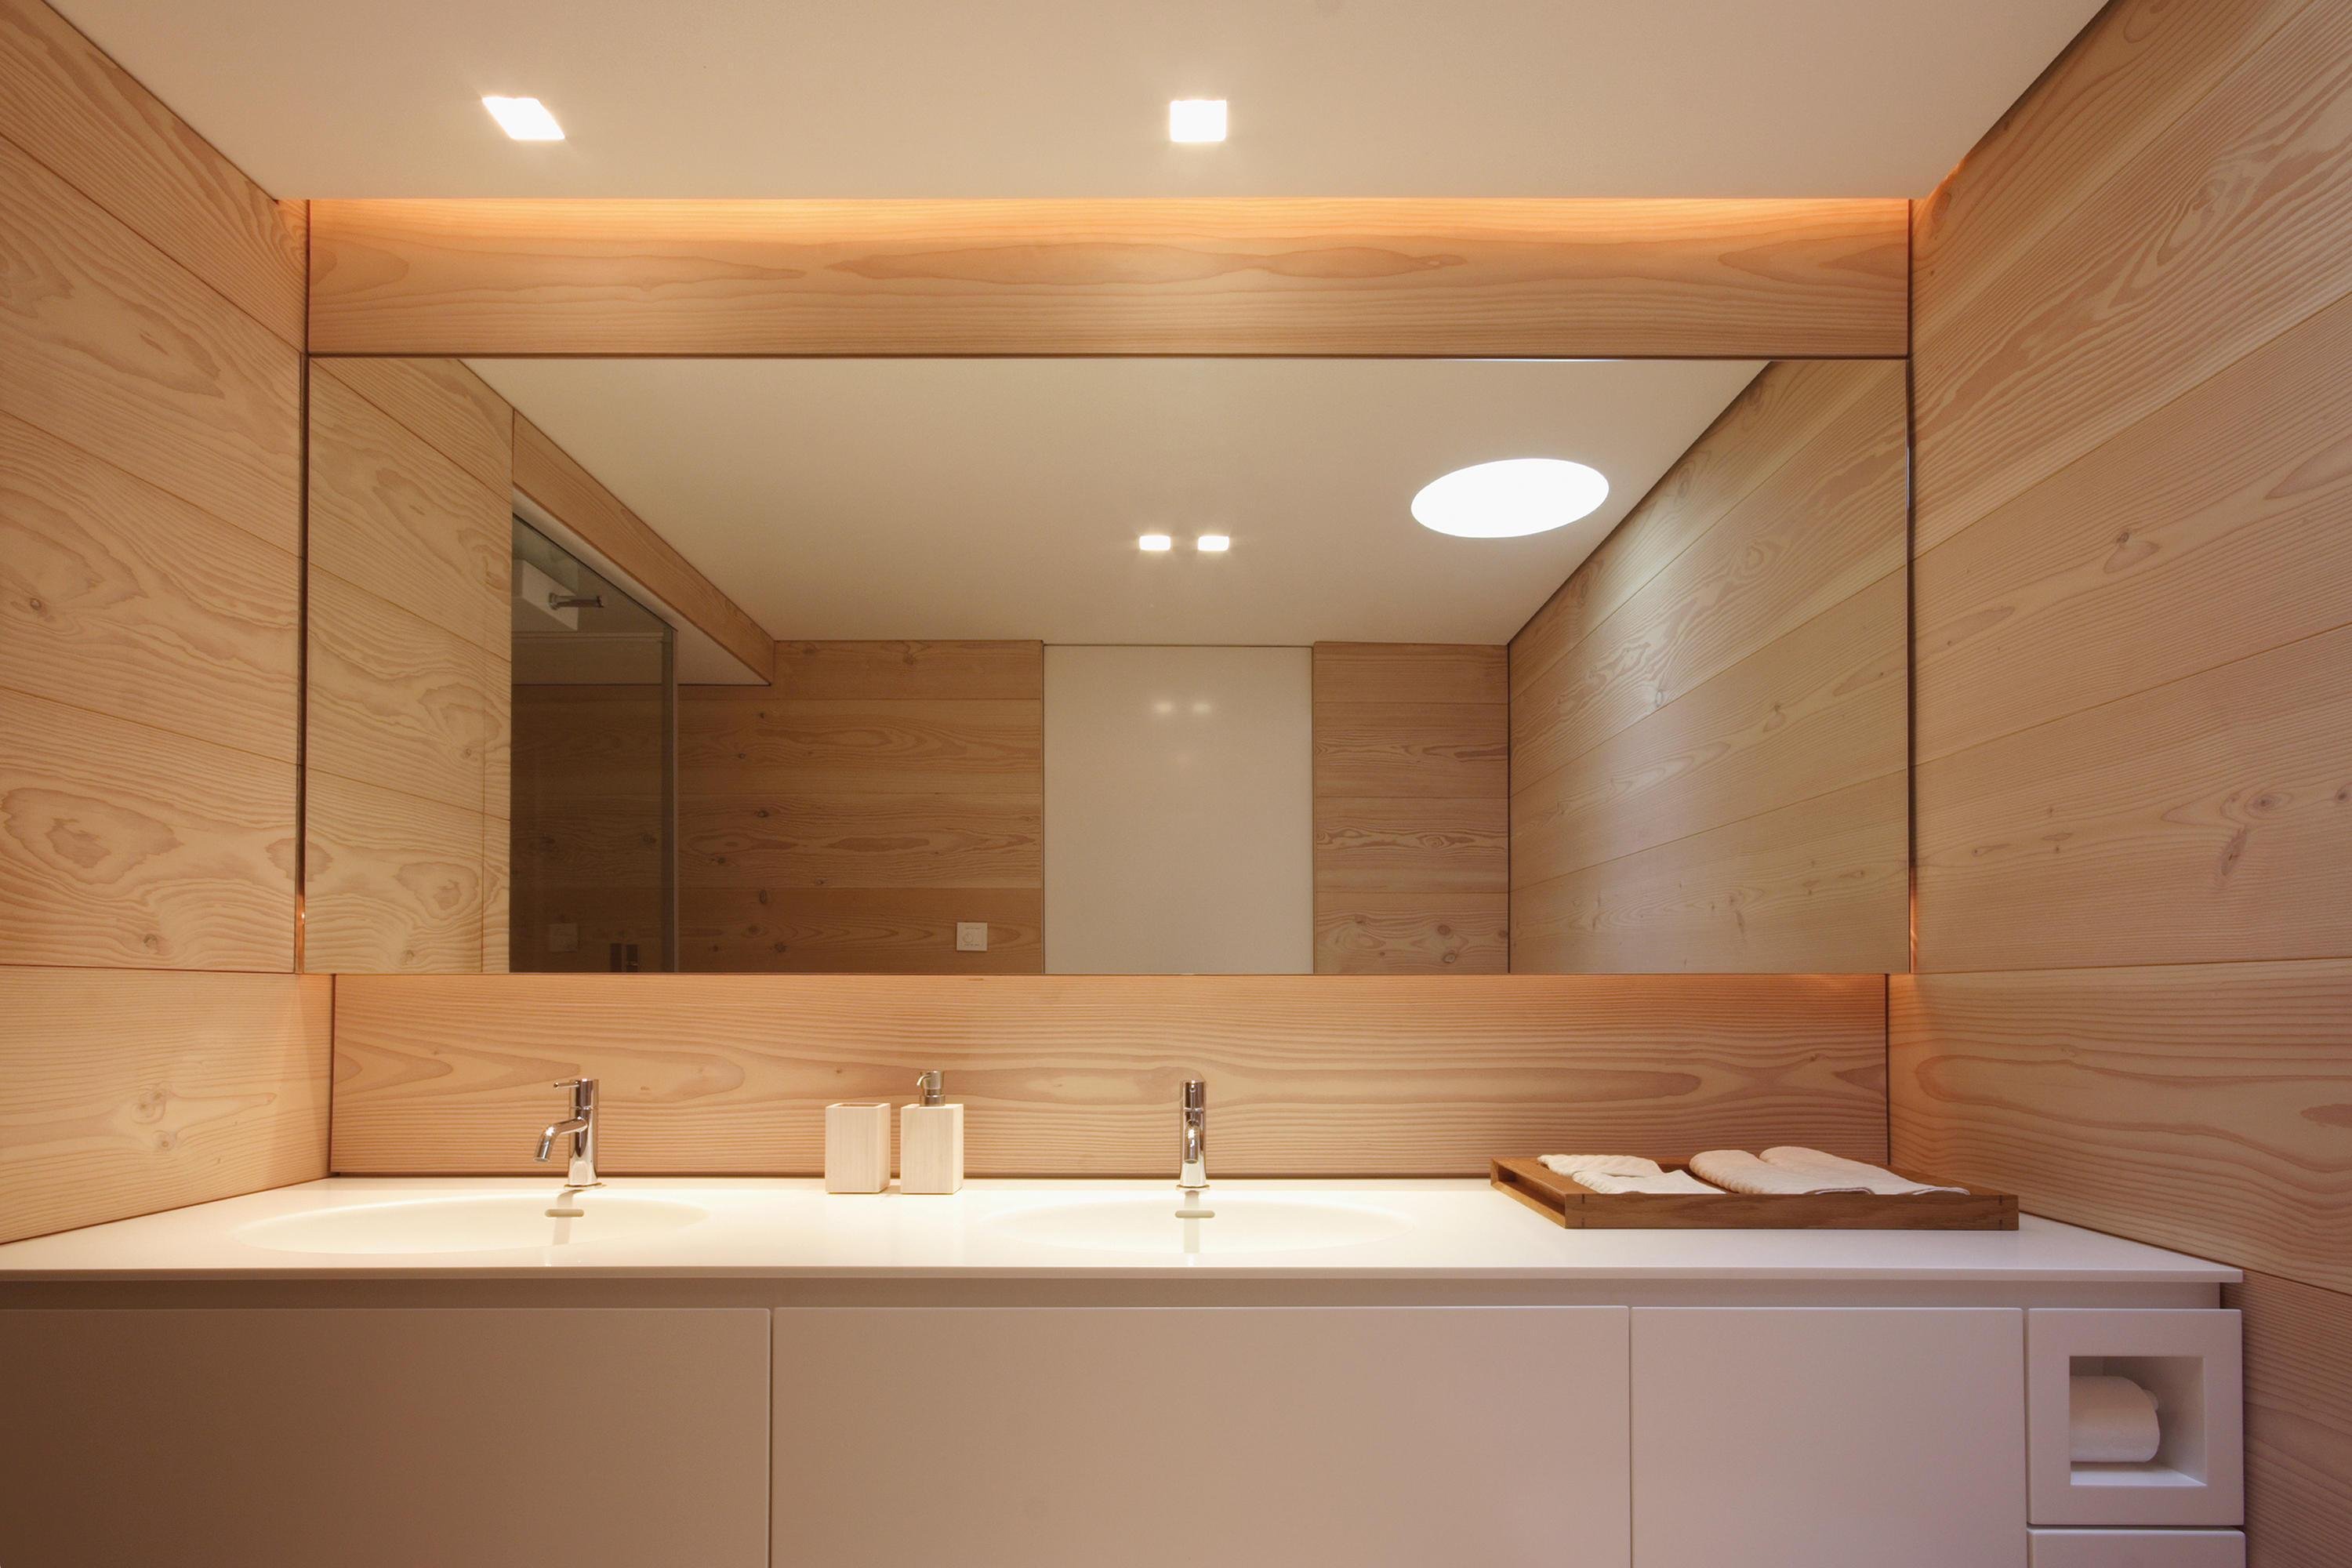 Ванная комната отделка стен панелями. Деревянные панели в ванной комнате. Ванная стеновыми панелями. Панели для отделки стен в ванной. Стеновые панели в ванную комнату.